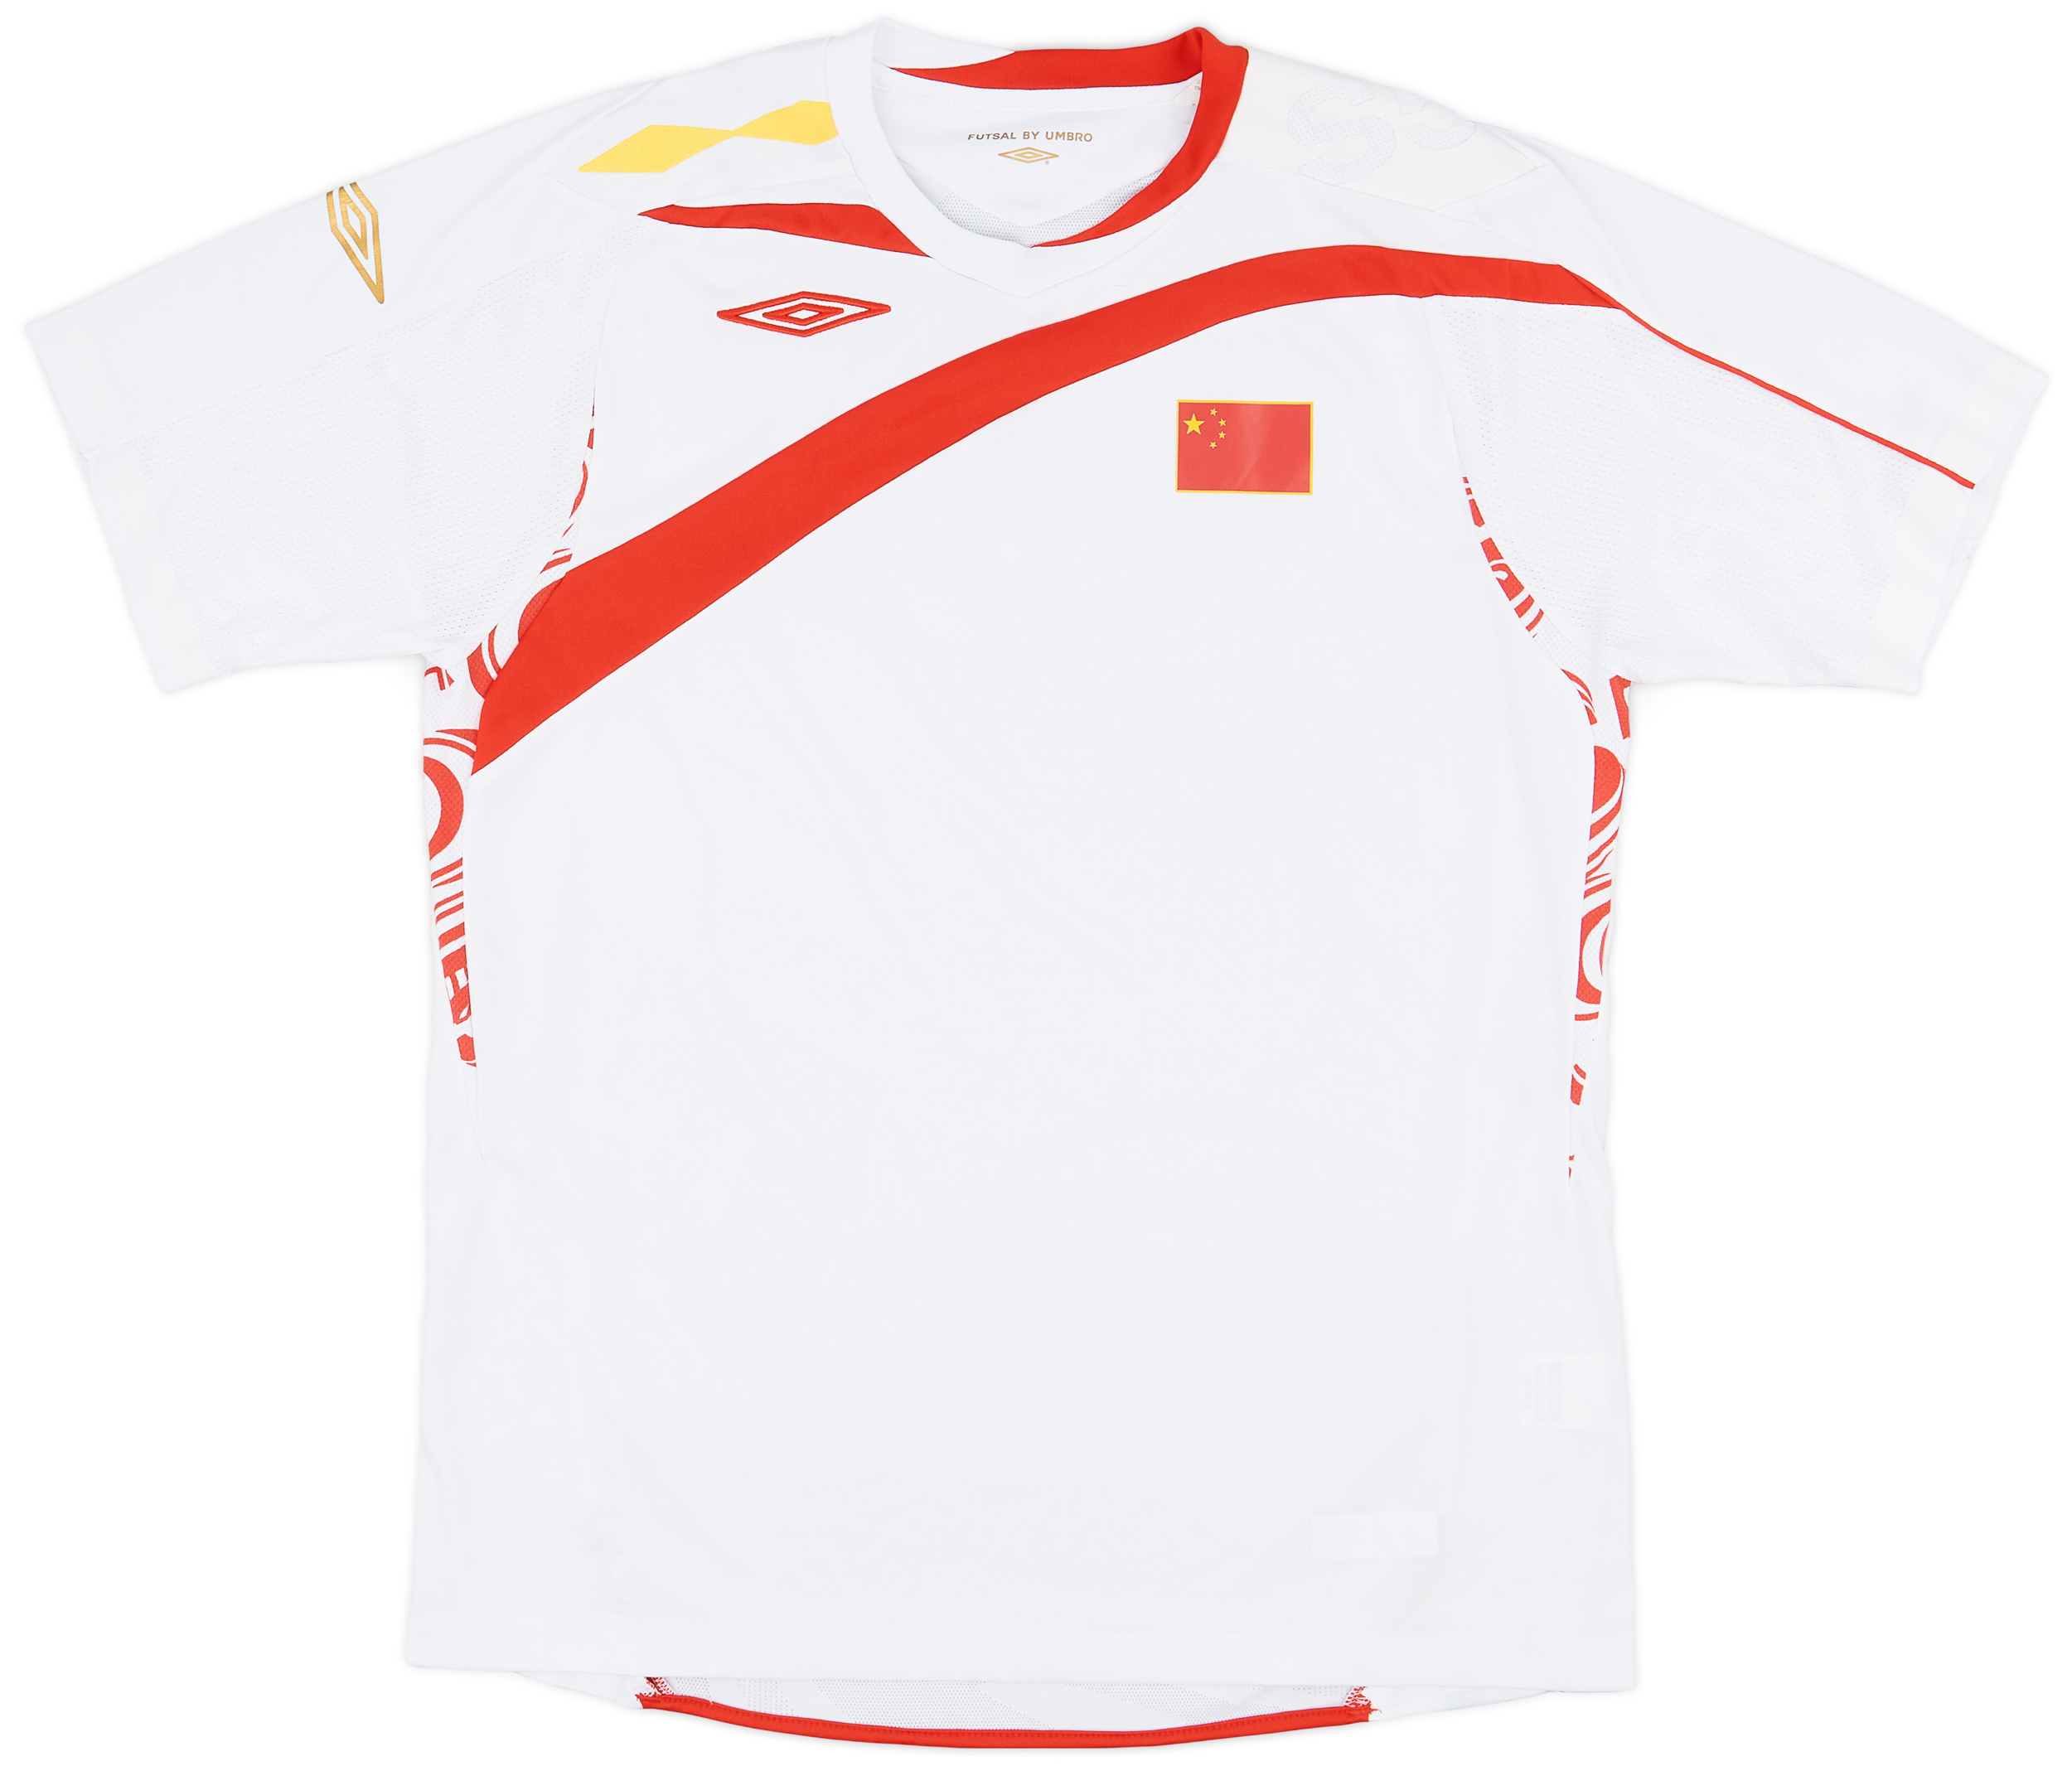 2007 China Away Futsal Shirt - 9/10 - ()